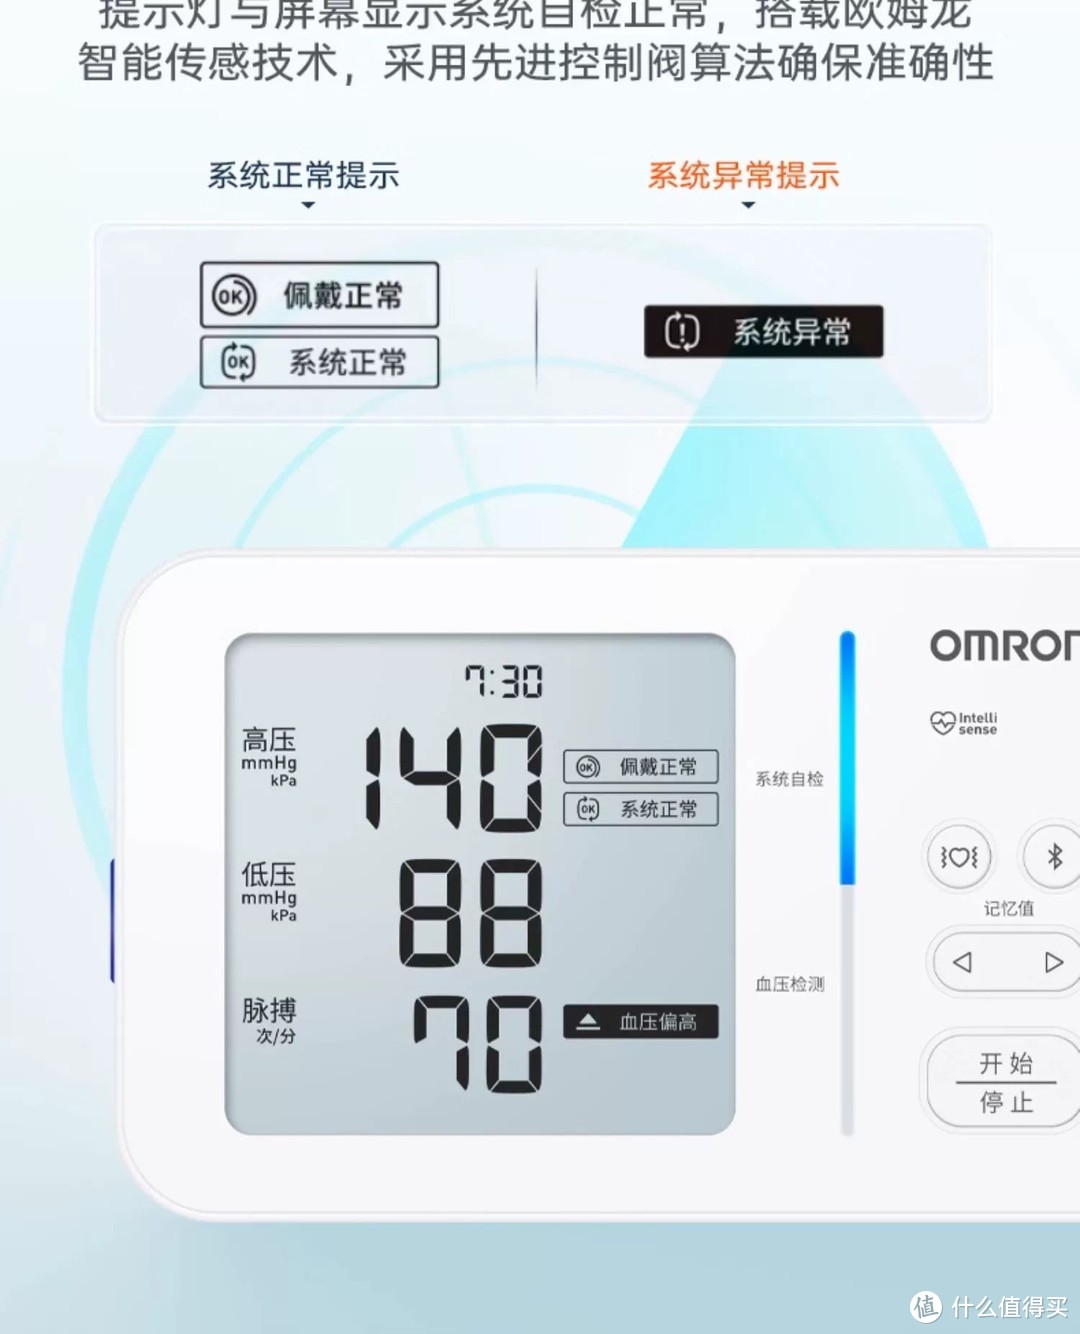 欧姆龙房颤血压计电子血压测量仪：家庭健康必备神器